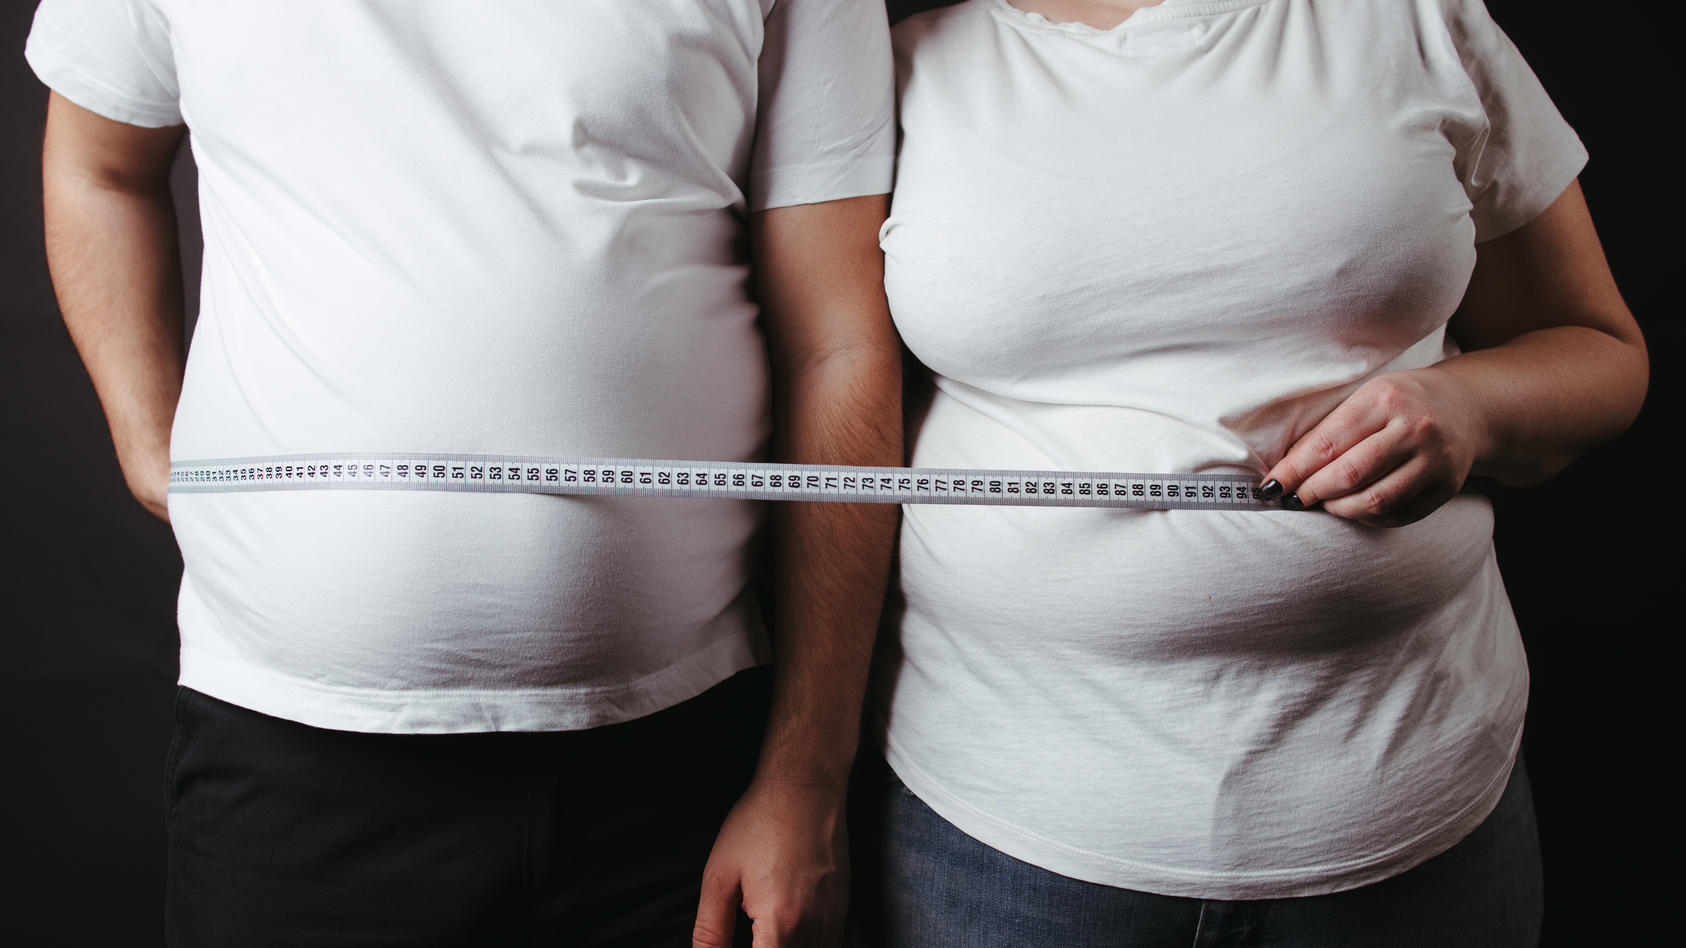 Ein übergewichtiger Mann und eine ebenso übergewichtige Frau posieren für die Kamera mit einem Maßband.